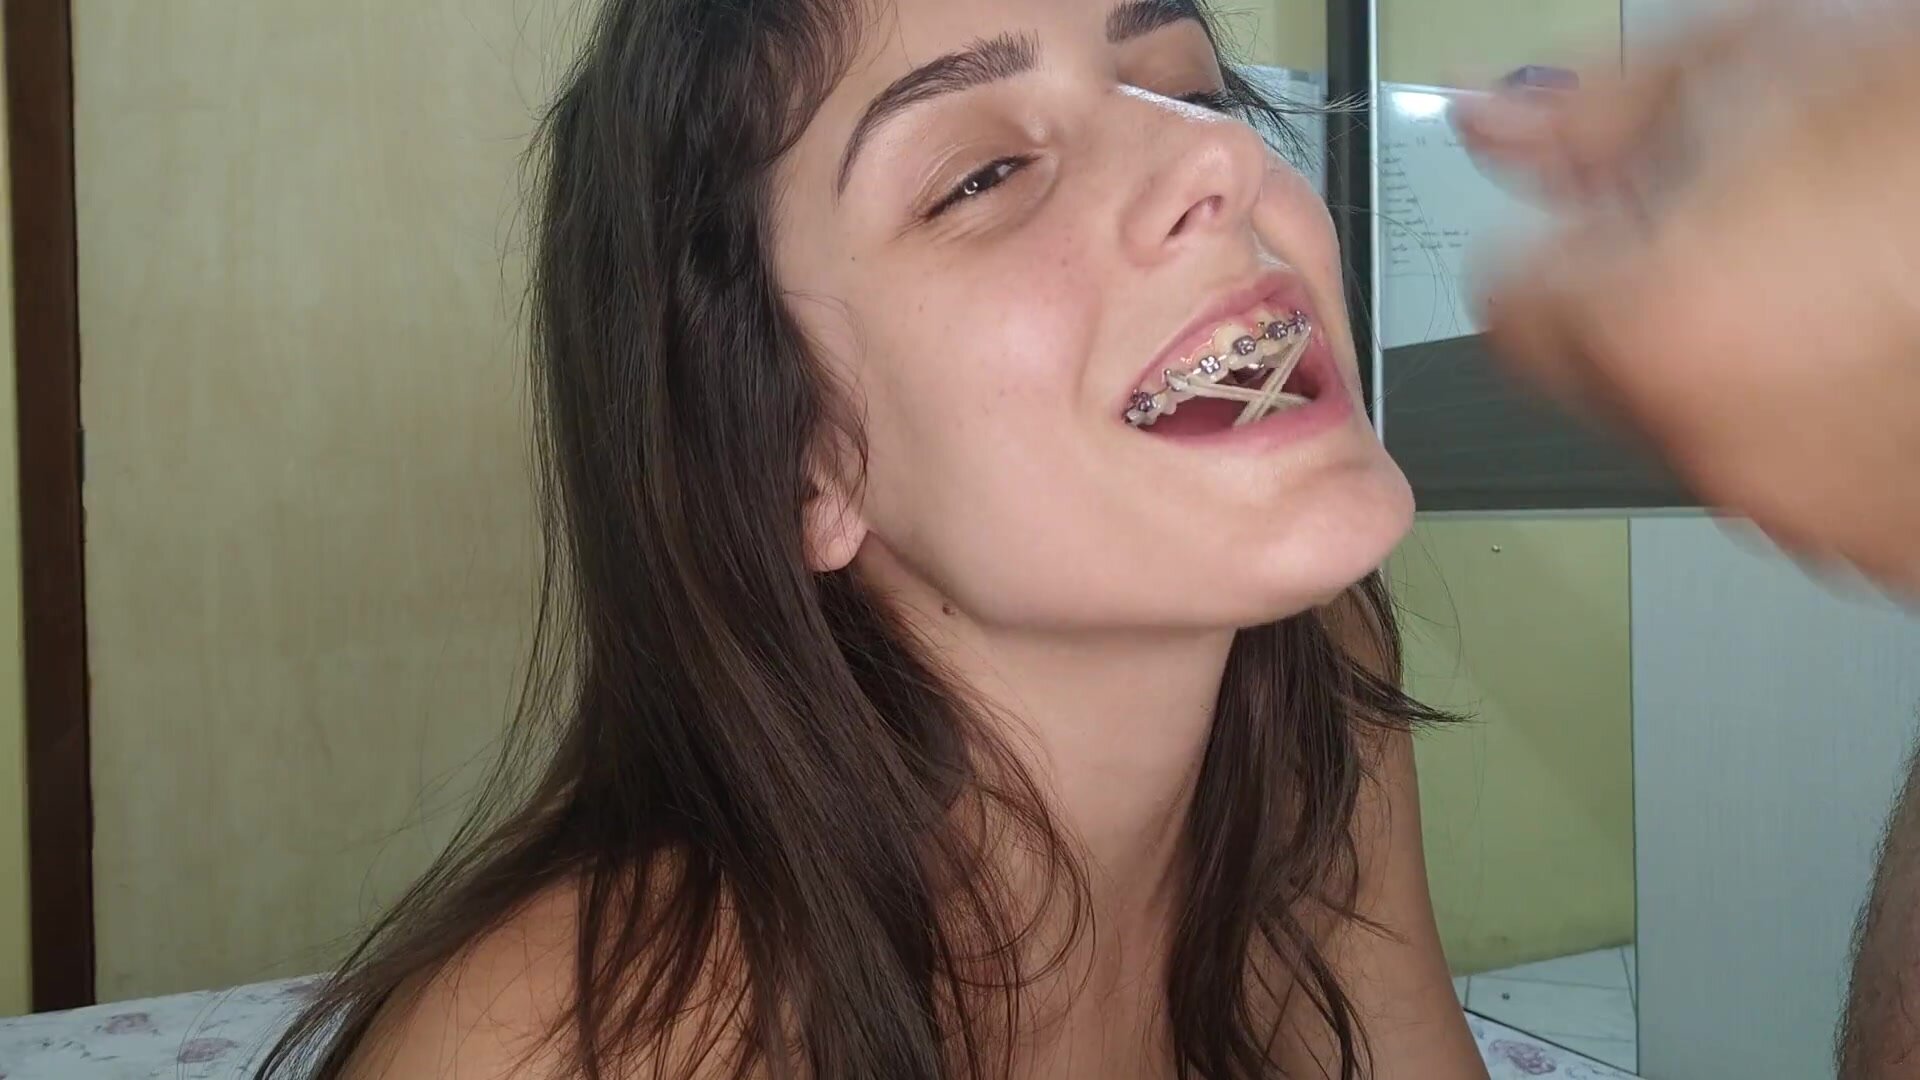 Braces: Cum on her braces - ThisVid.com